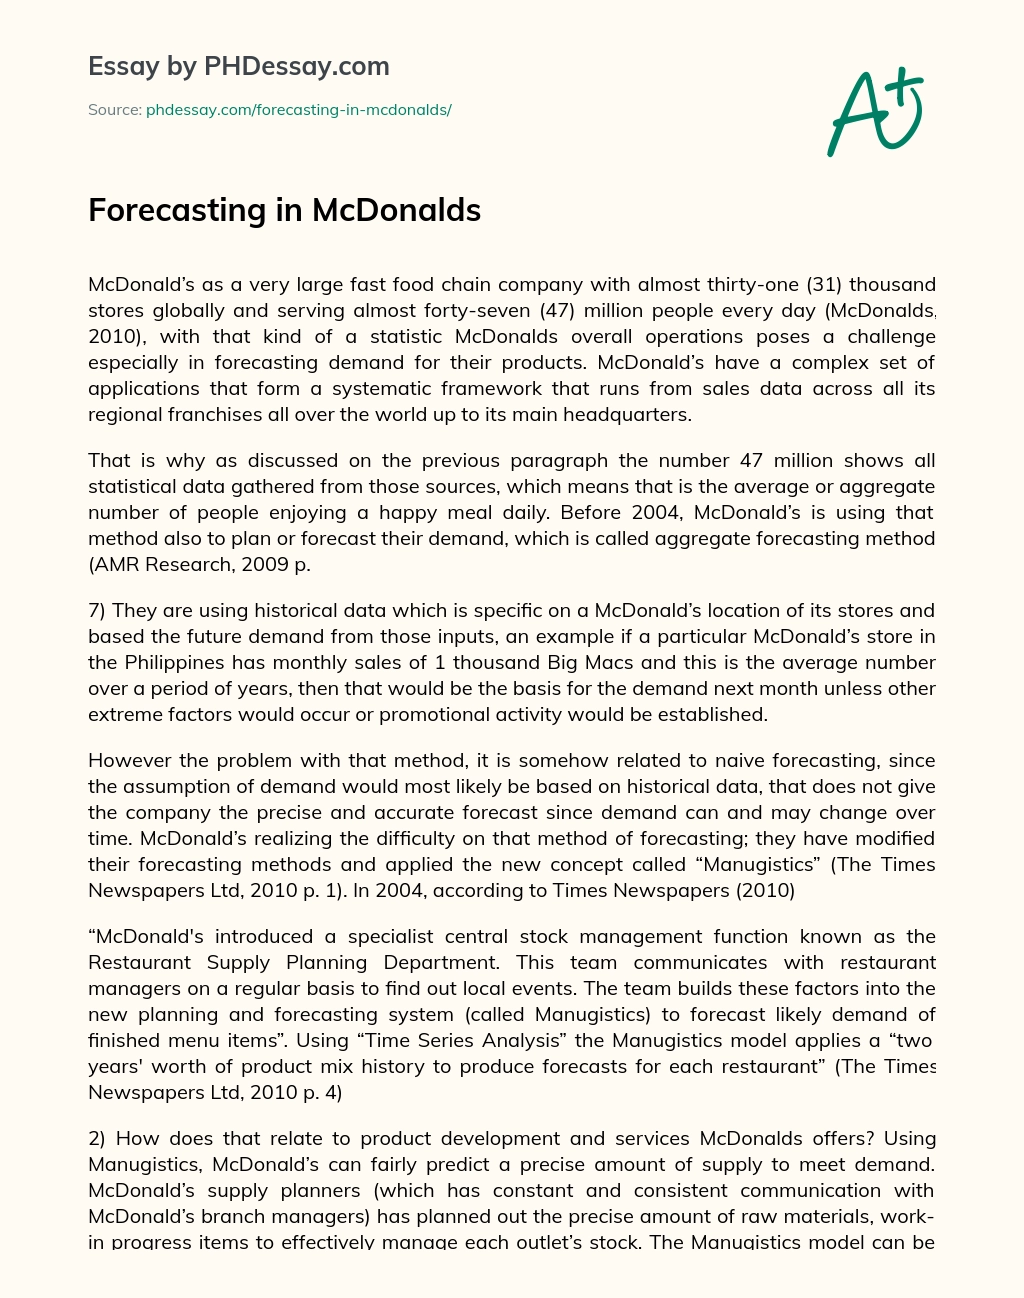 Forecasting in McDonalds essay